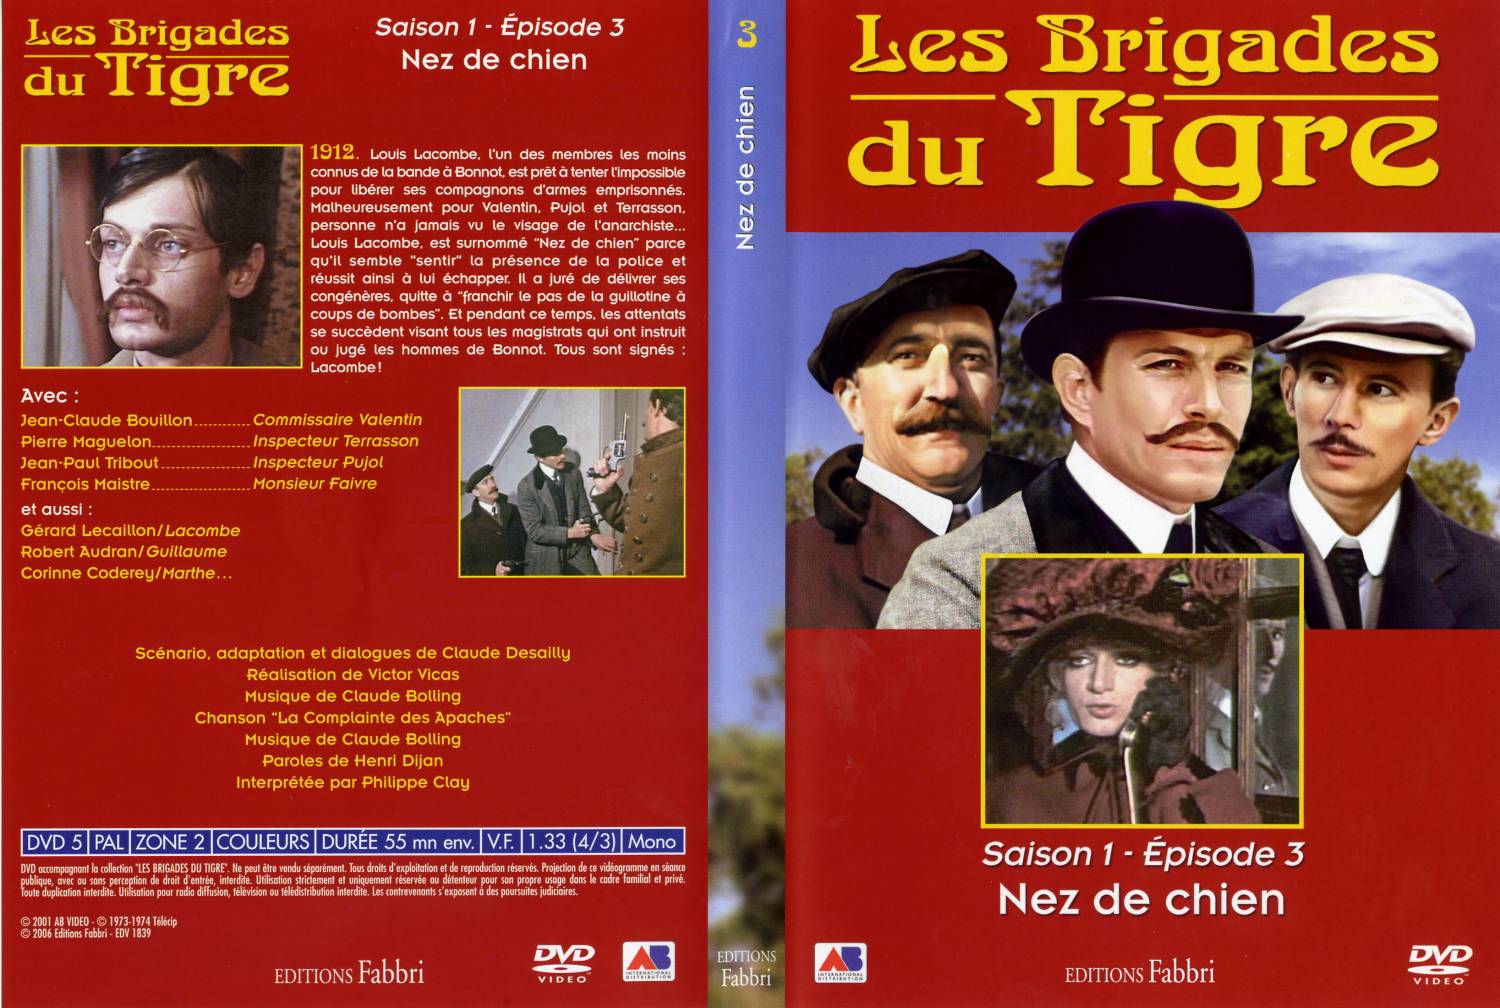 Jaquette DVD Les brigades du tigre saison 1 pisode 3